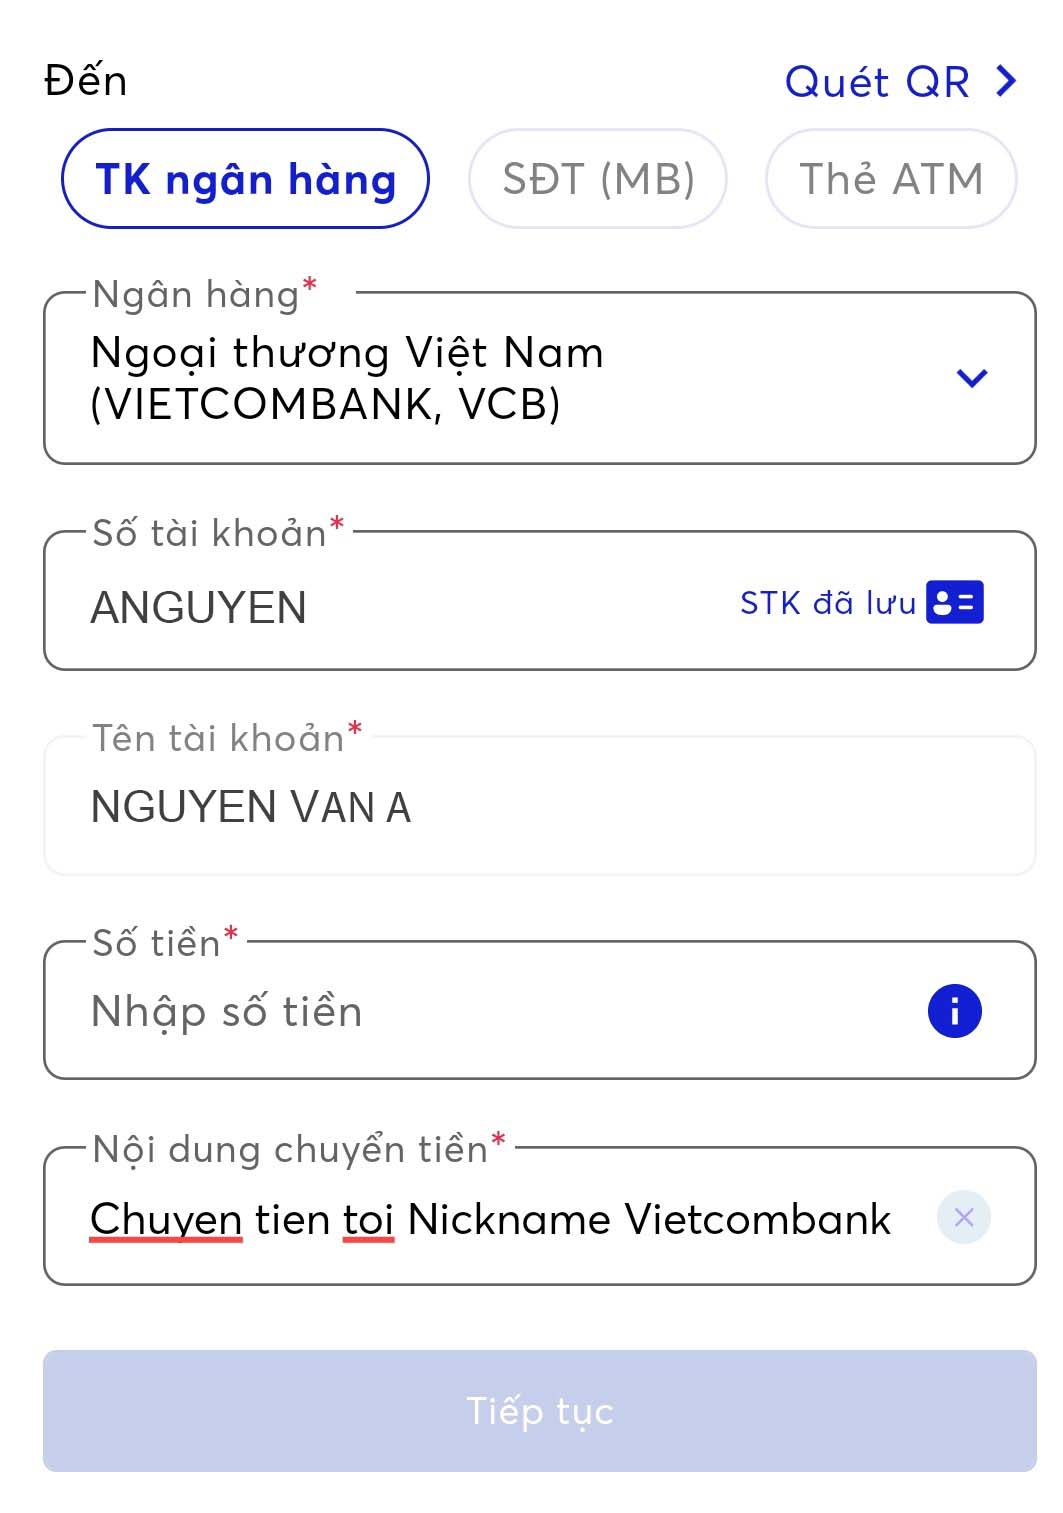 Dịch vụ chuyển tiền của Vietcombank rất đáng tin cậy, chúng tôi sẽ đảm bảo cho bạn giao dịch nhanh chóng và hiệu quả. Tìm hiểu thêm về cách chuyển tiền của Vietcombank để có trải nghiệm tuyệt vời nhất!